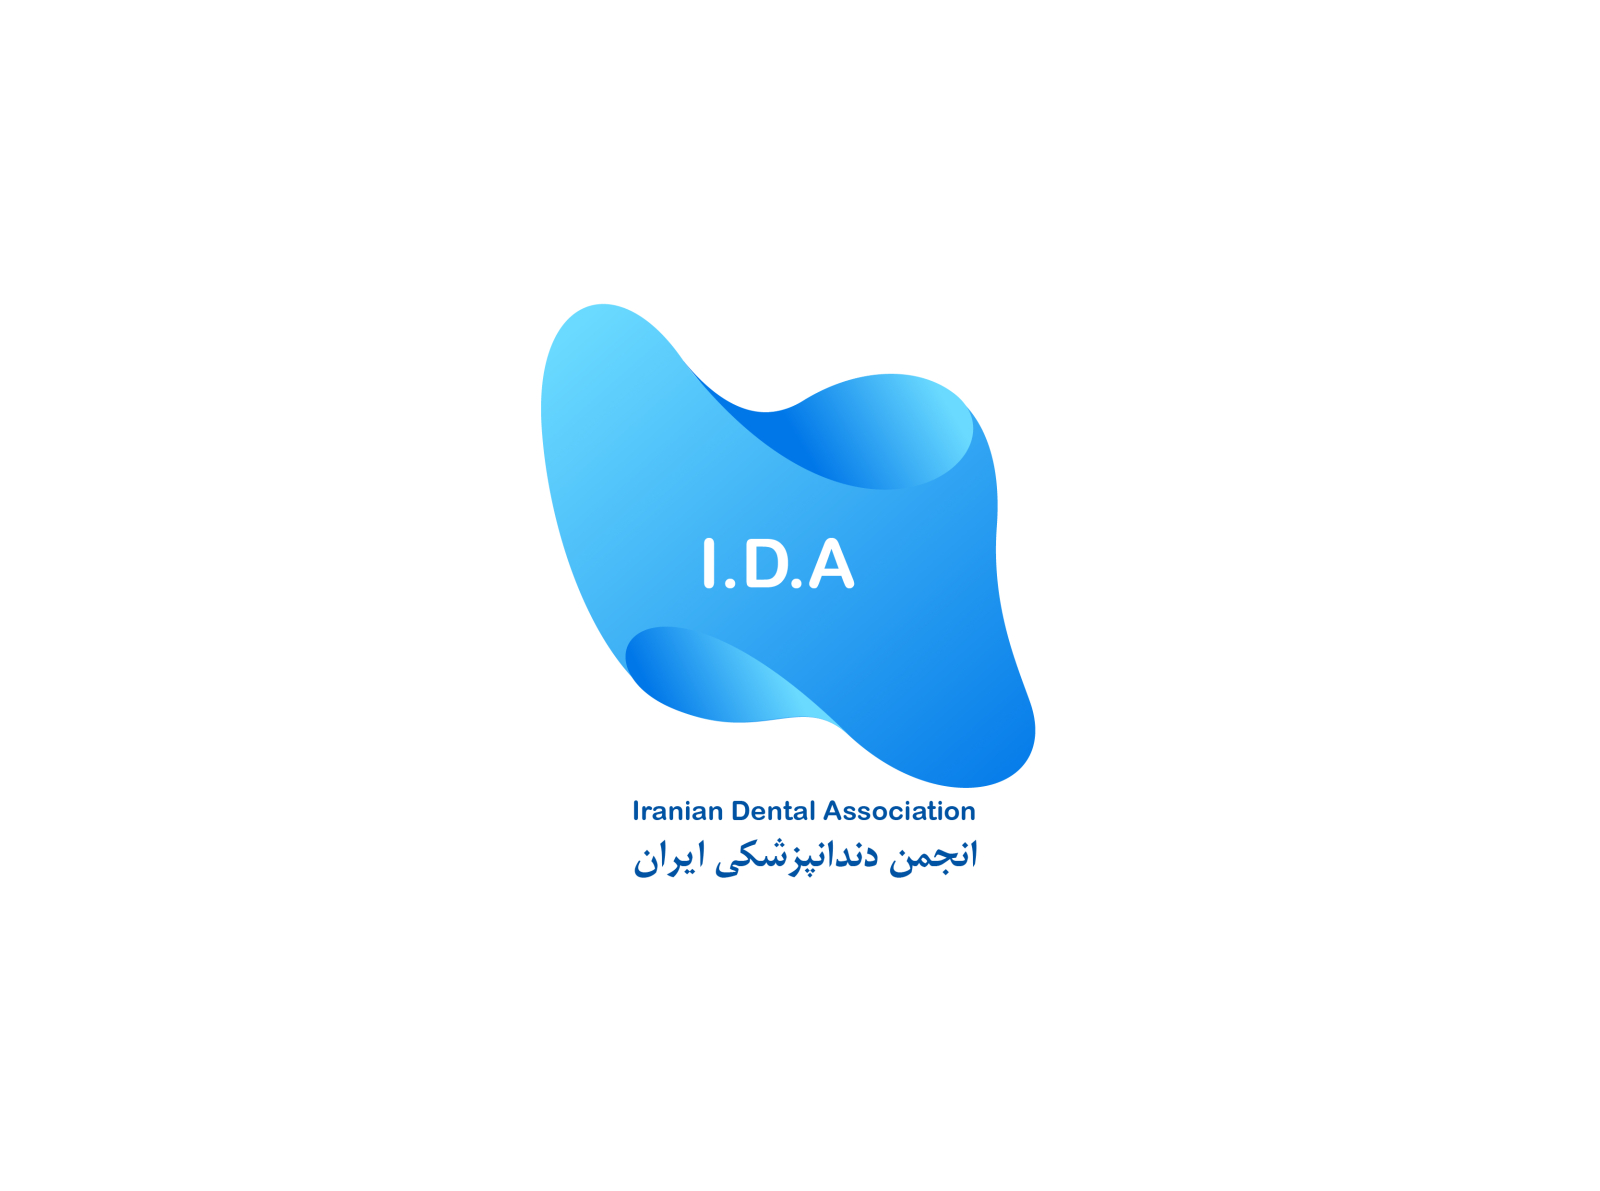 IDA Design